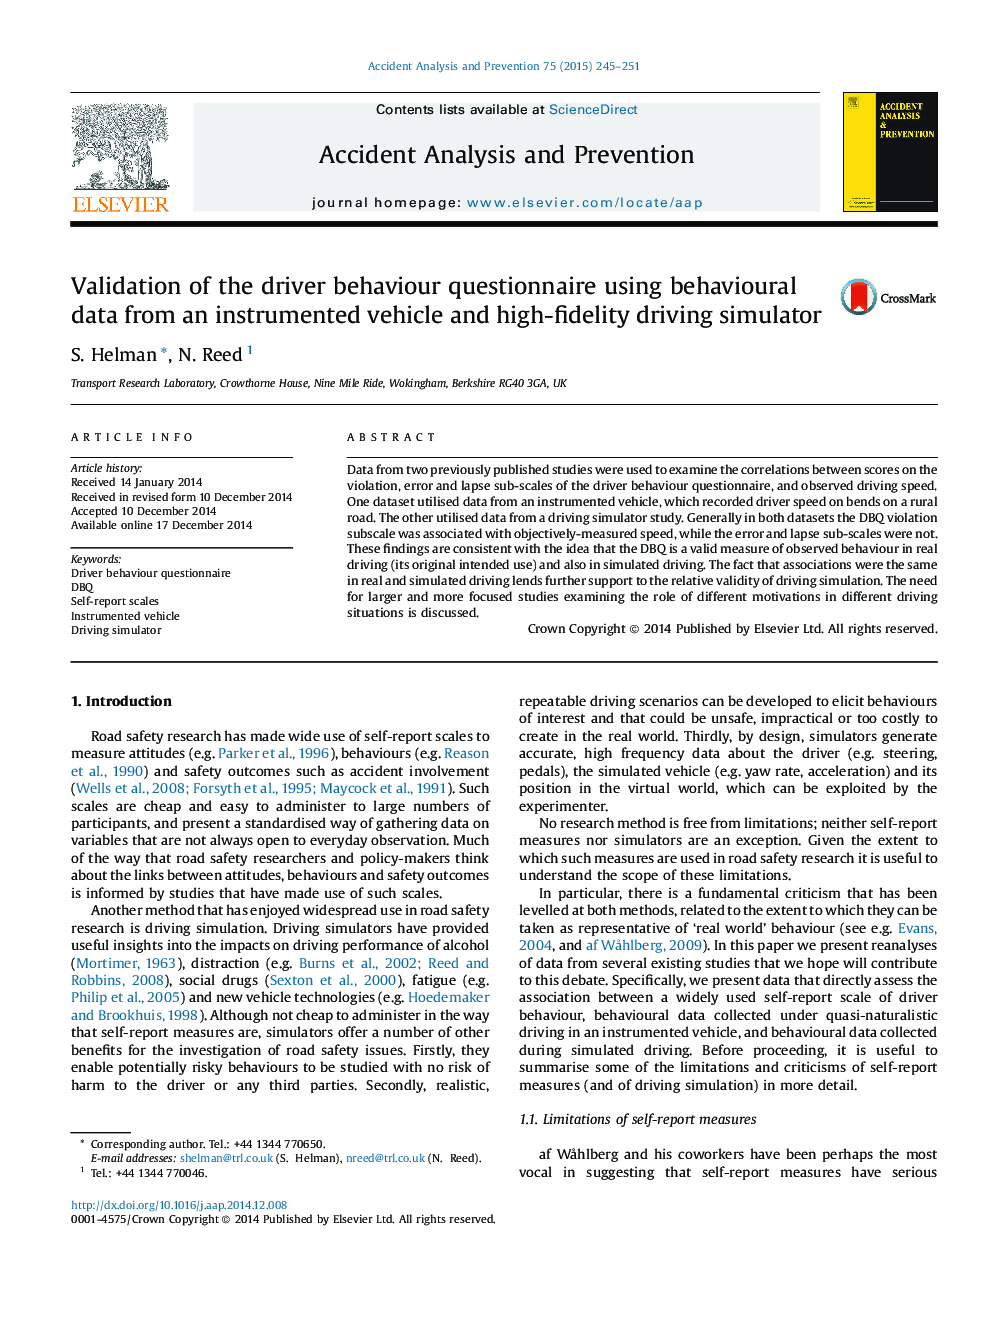 اعتبار سنجی پرسشنامه رفتار راننده با استفاده از داده های رفتاری از وسیله نقلیه موتوری و شبیه ساز رانندگی با وفاداری بالا 